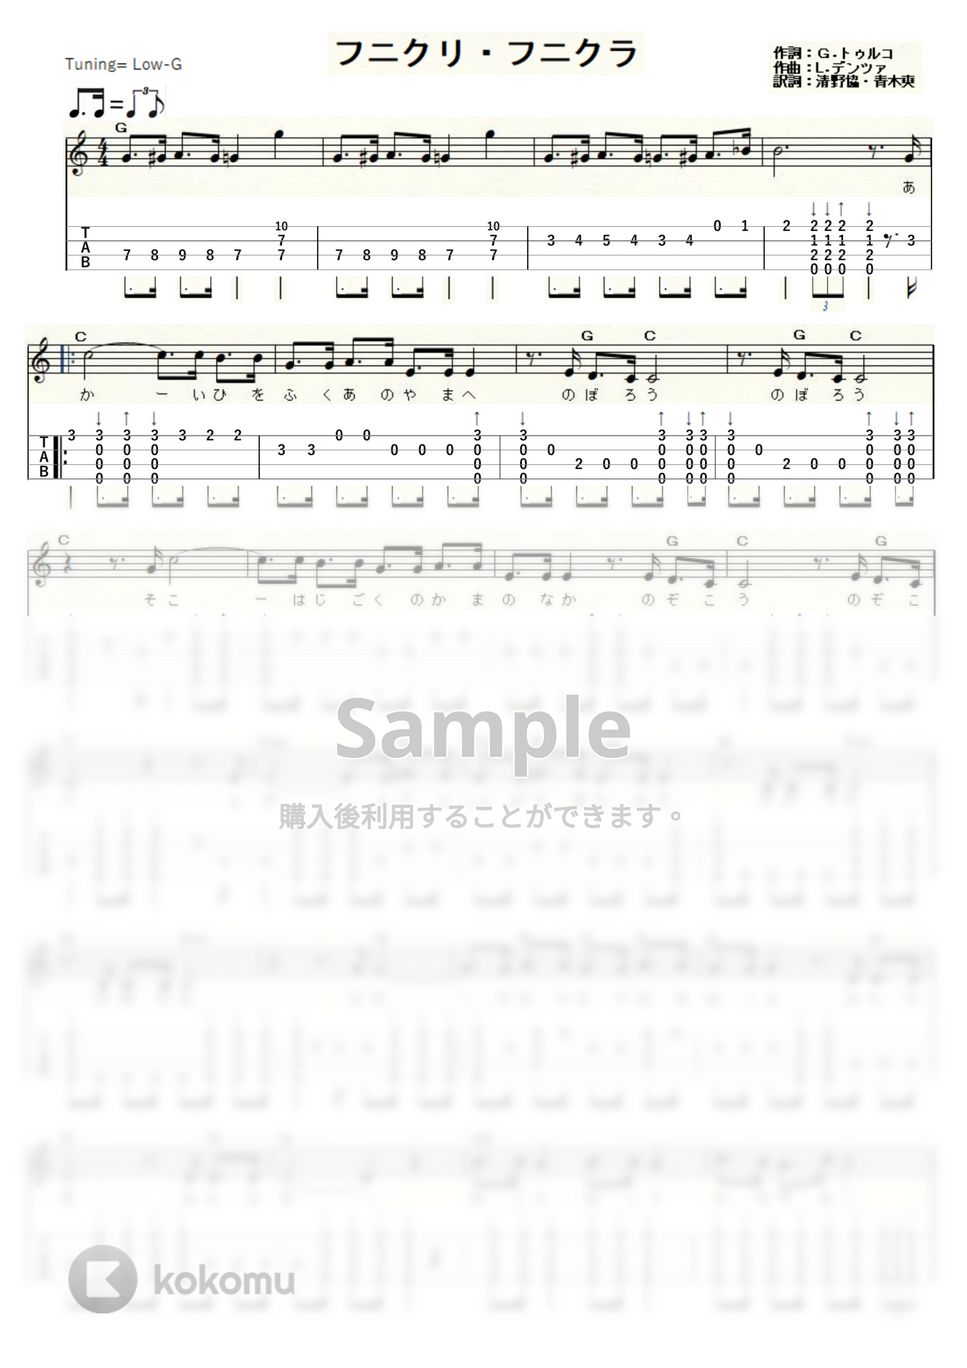 フニクリ・フニクラ (ｳｸﾚﾚｿﾛ / Low-G / 中級) by ukulelepapa